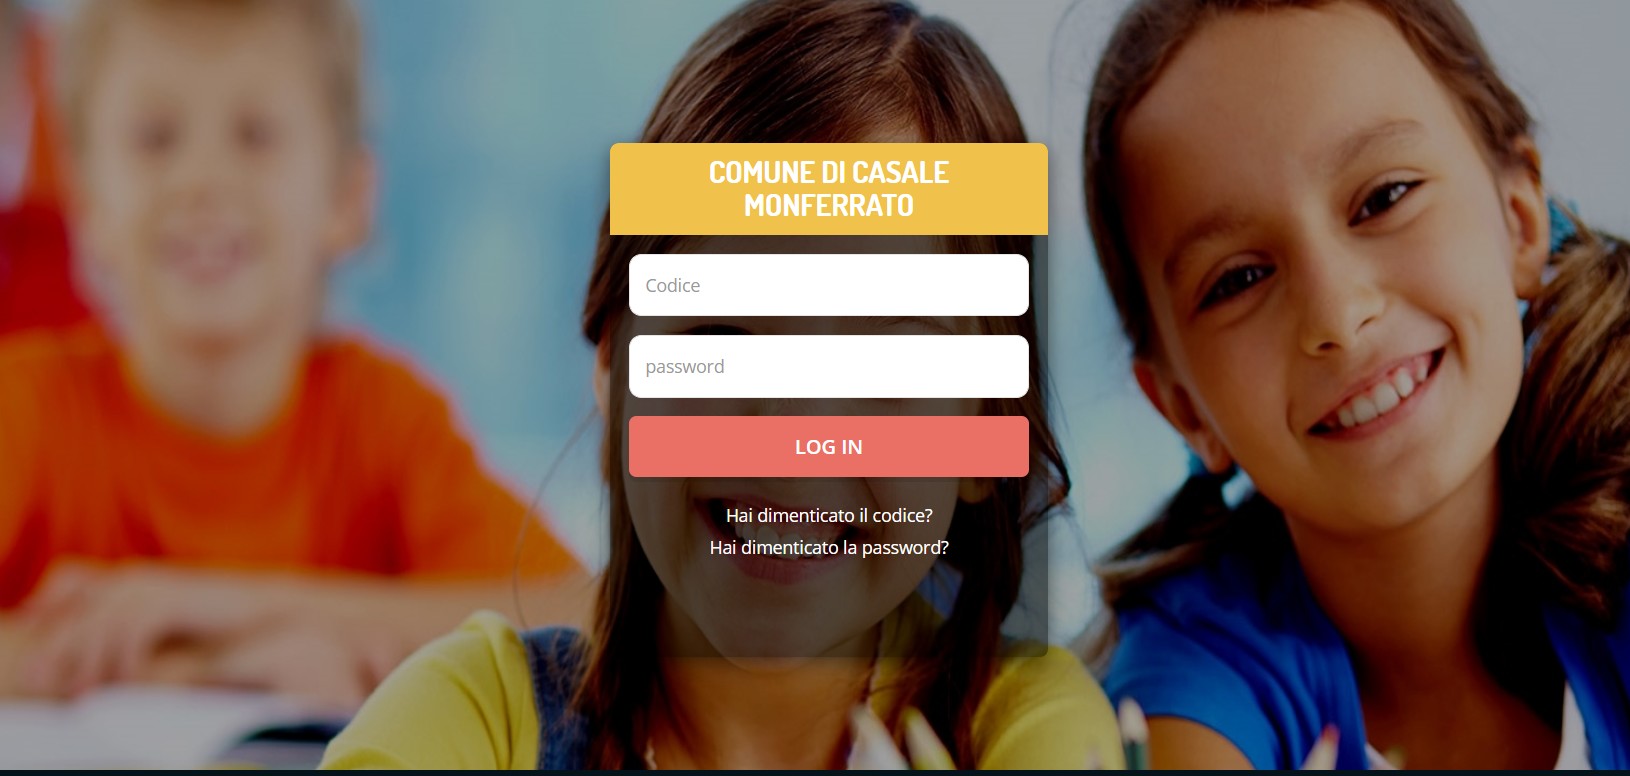 Servizi scolastici: a Casale nuova finestra per le iscrizioni online, fino al 6 settembre